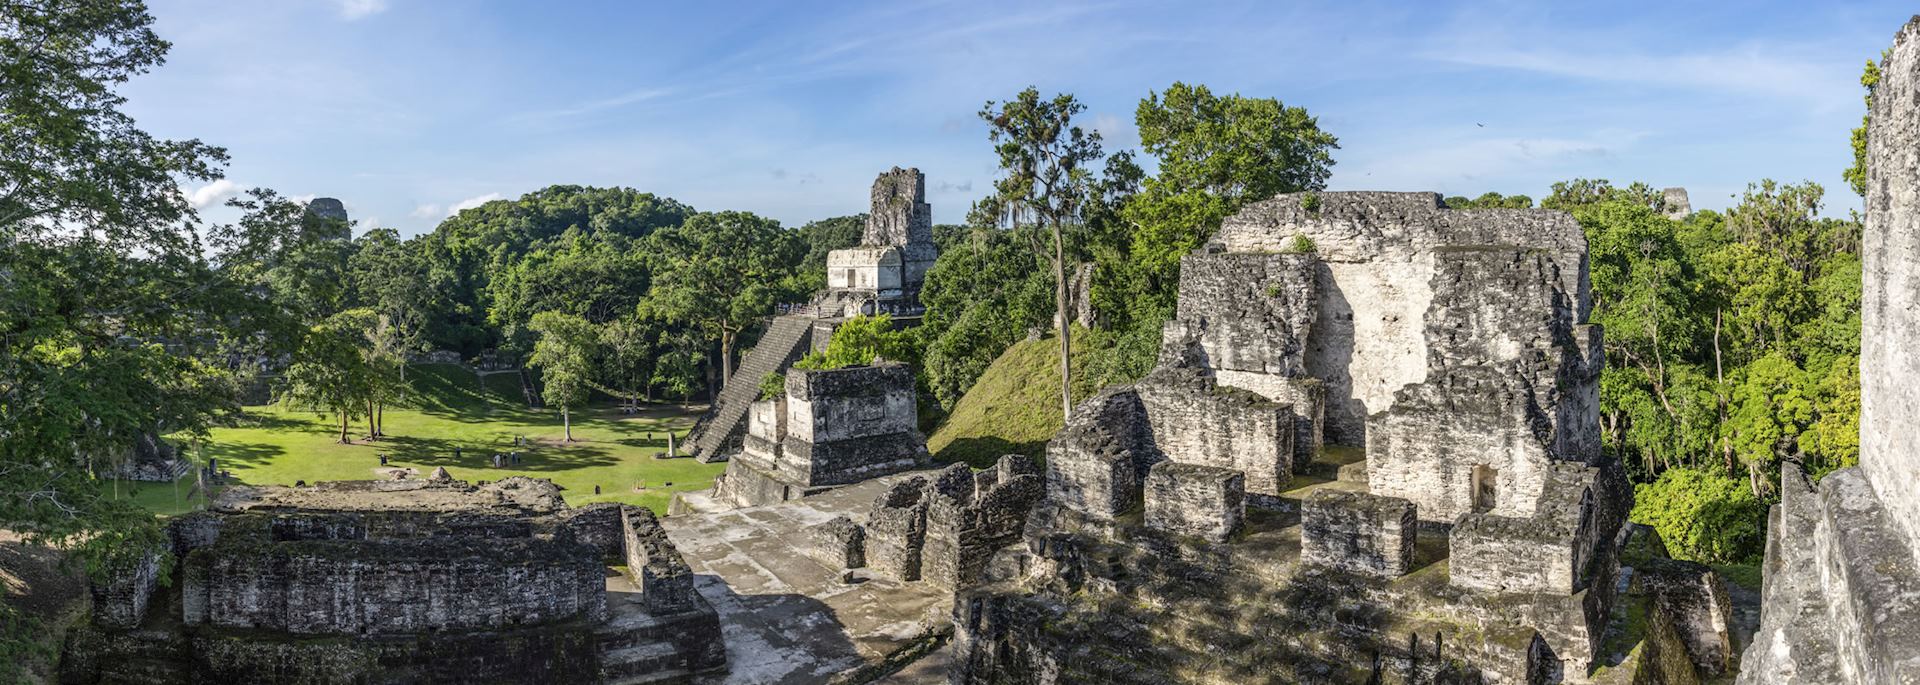 Maya ruins at Tikal